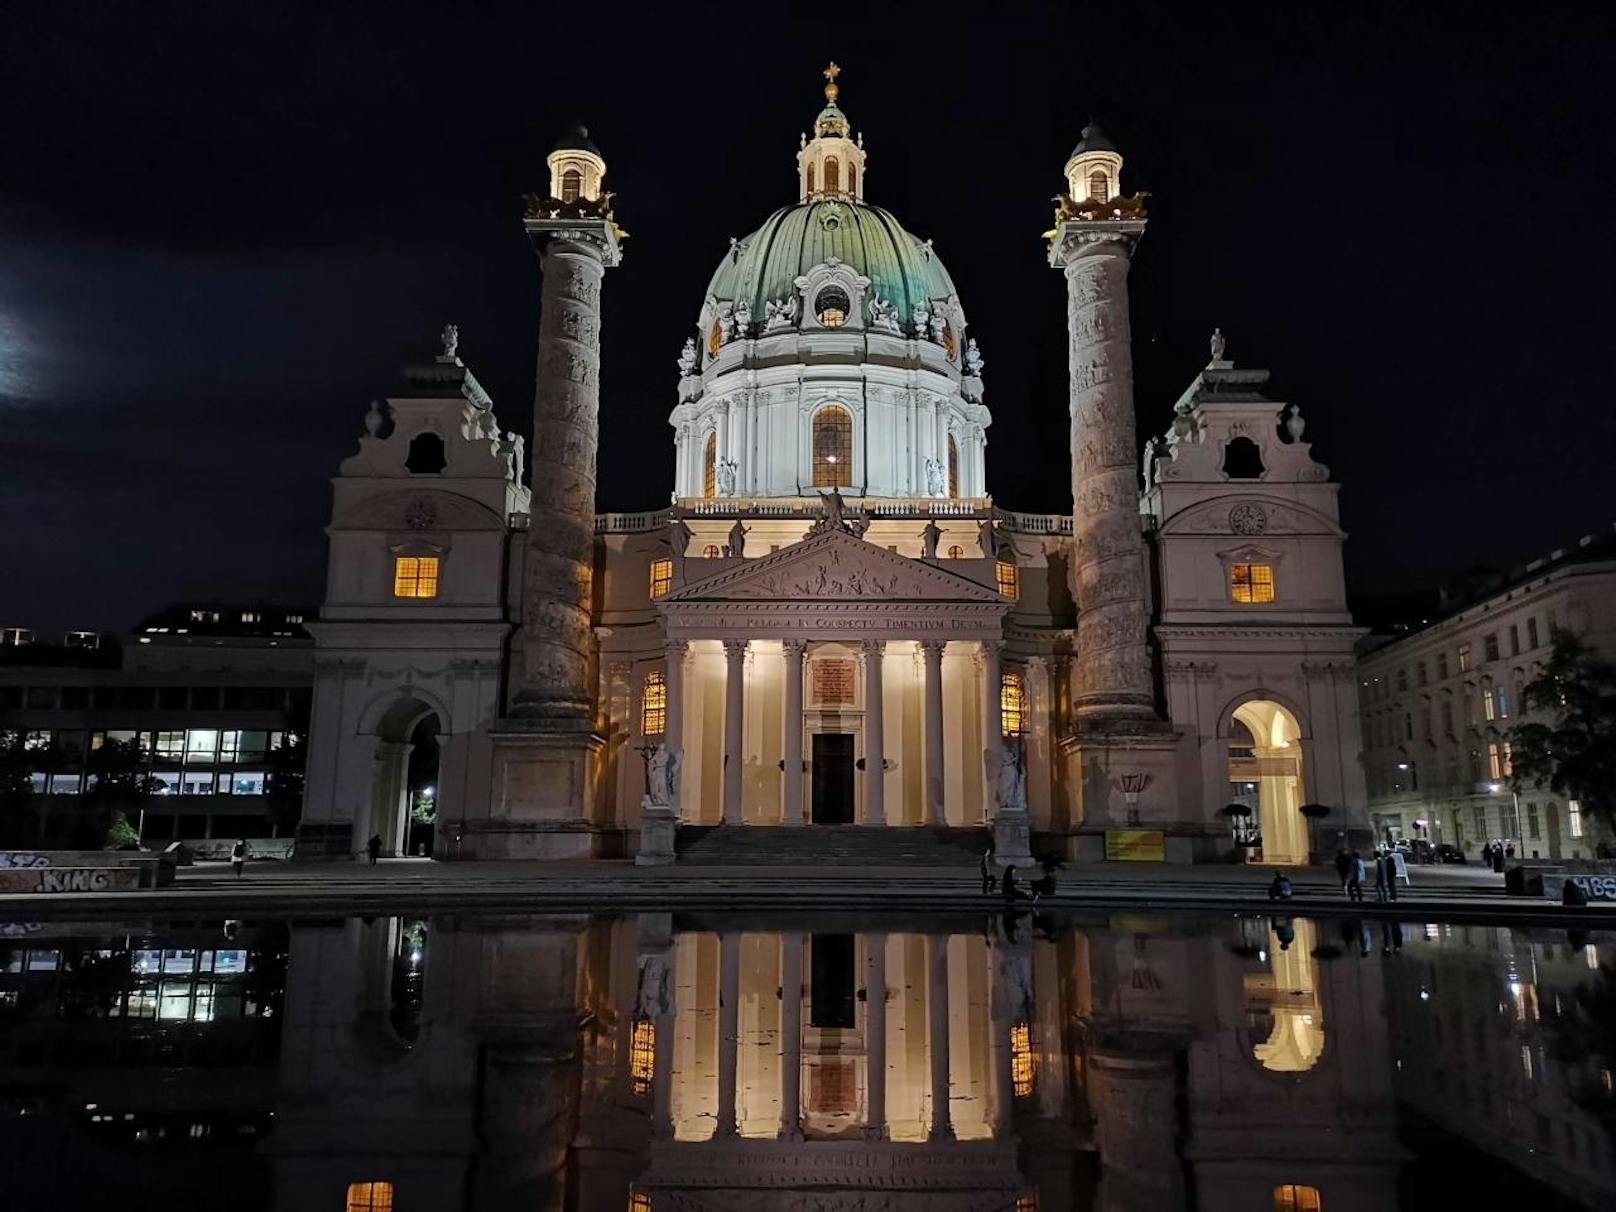 Schöne Fotos wie hier bei Nacht von der Karlskirche hat schon das P20 Pro gemacht. Das Mate 20 Pro allerdings...